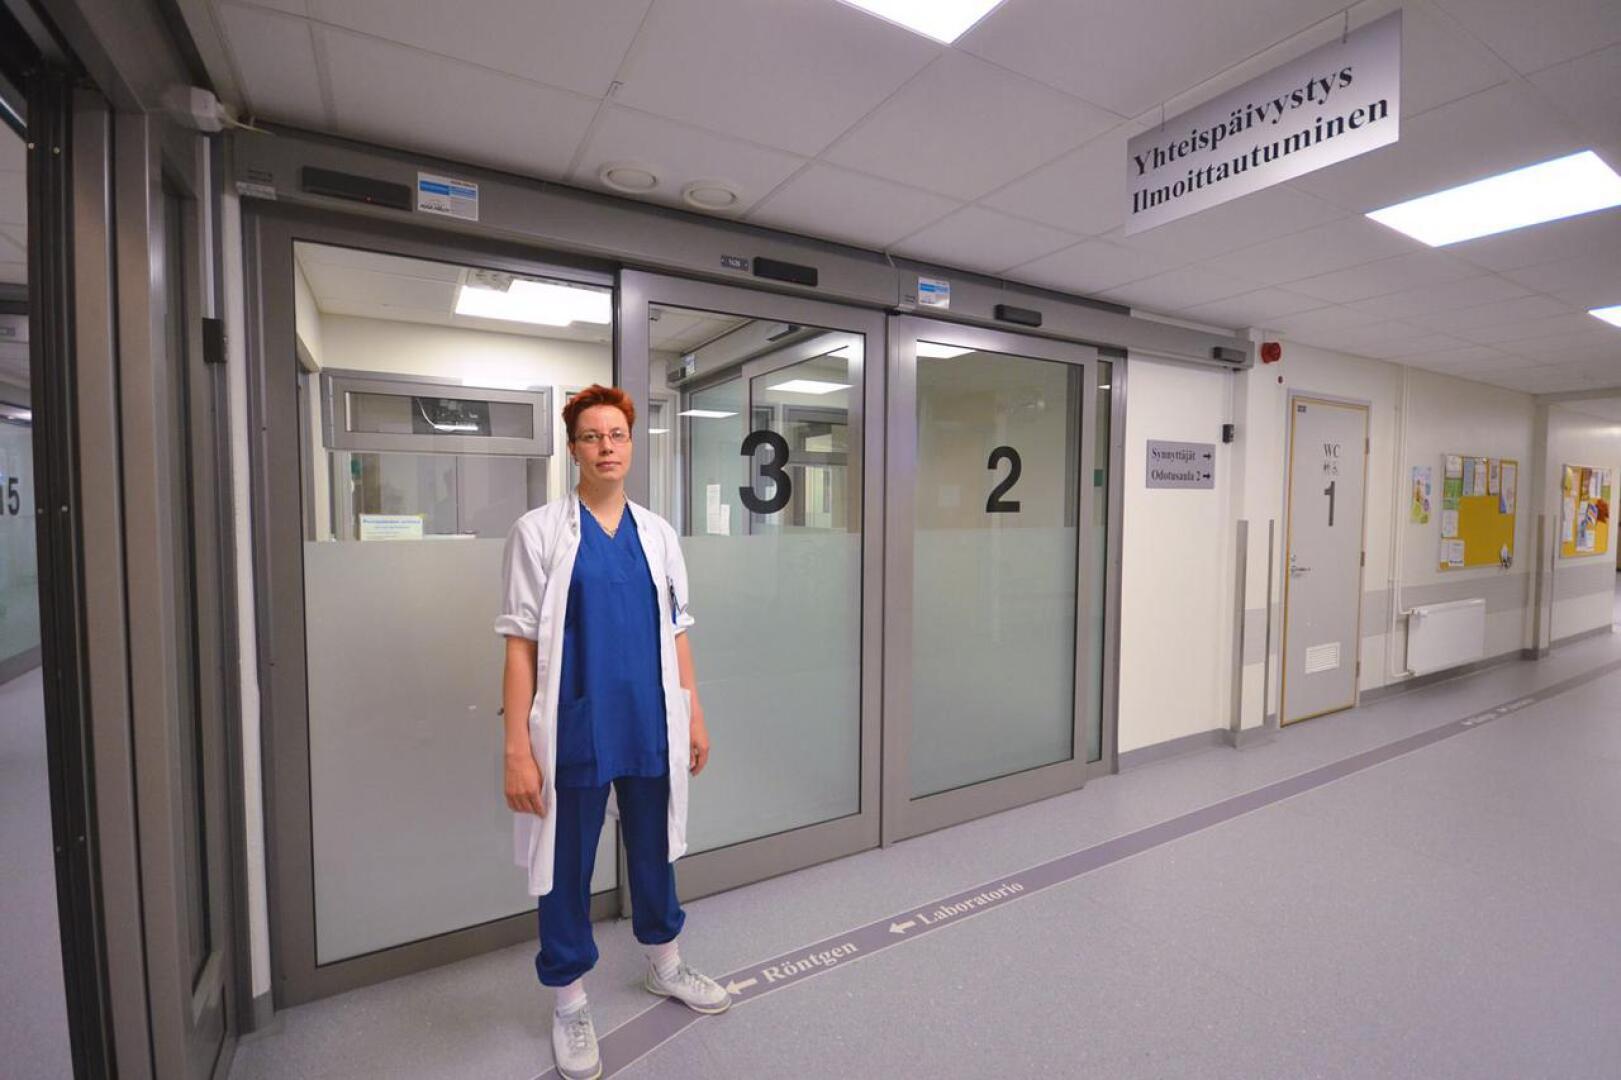 Ylilääkäri Anu Tuomikoski Oulaskankaan sairaalan yhteispäivystyksestä muistuttaa, että reseptejä ei uusita päivystyksessä, vaan potilaan täytyy itse huolehtia hyvissä ajoin reseptien uusiminen omassa hoitavassa yksikössä.